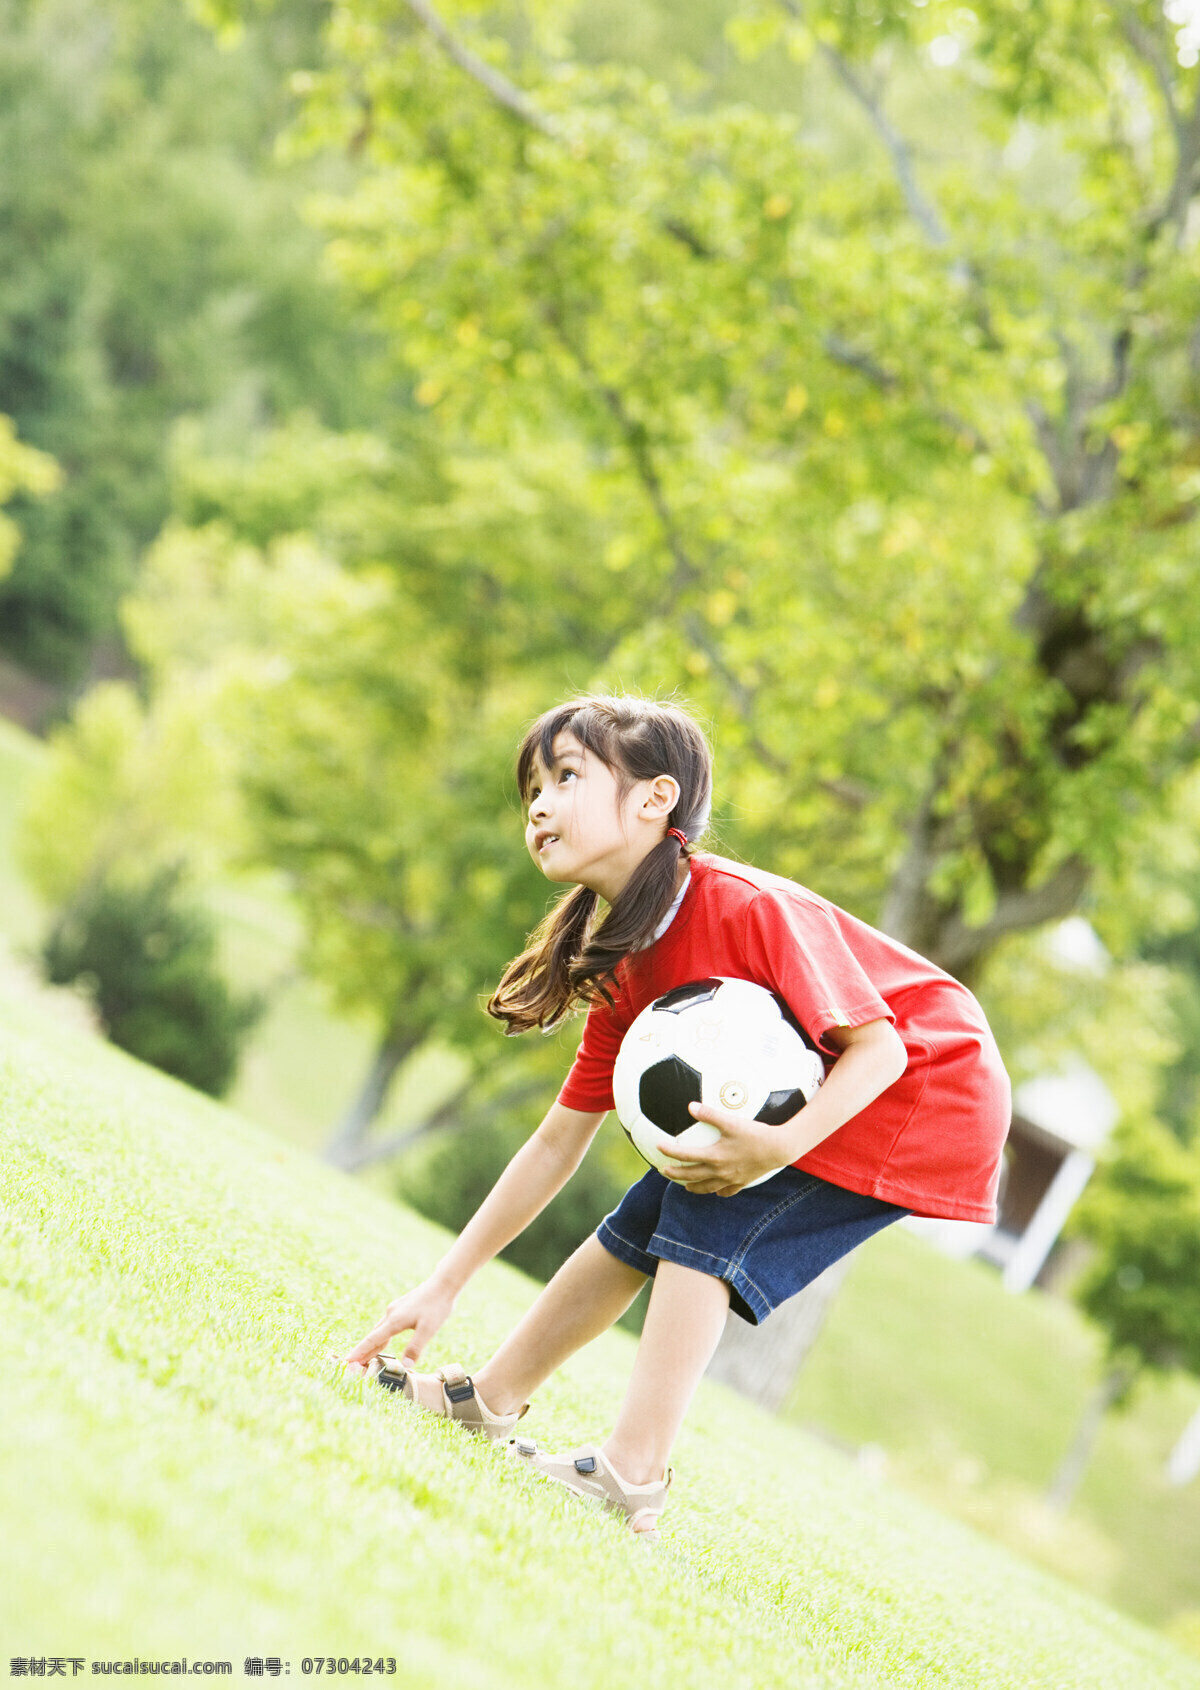 玩 足球 可爱 小女孩 儿童 可爱小女孩 玩足球 野炊 春游 郊游 摄影图 高清图片 生活人物 人物图片